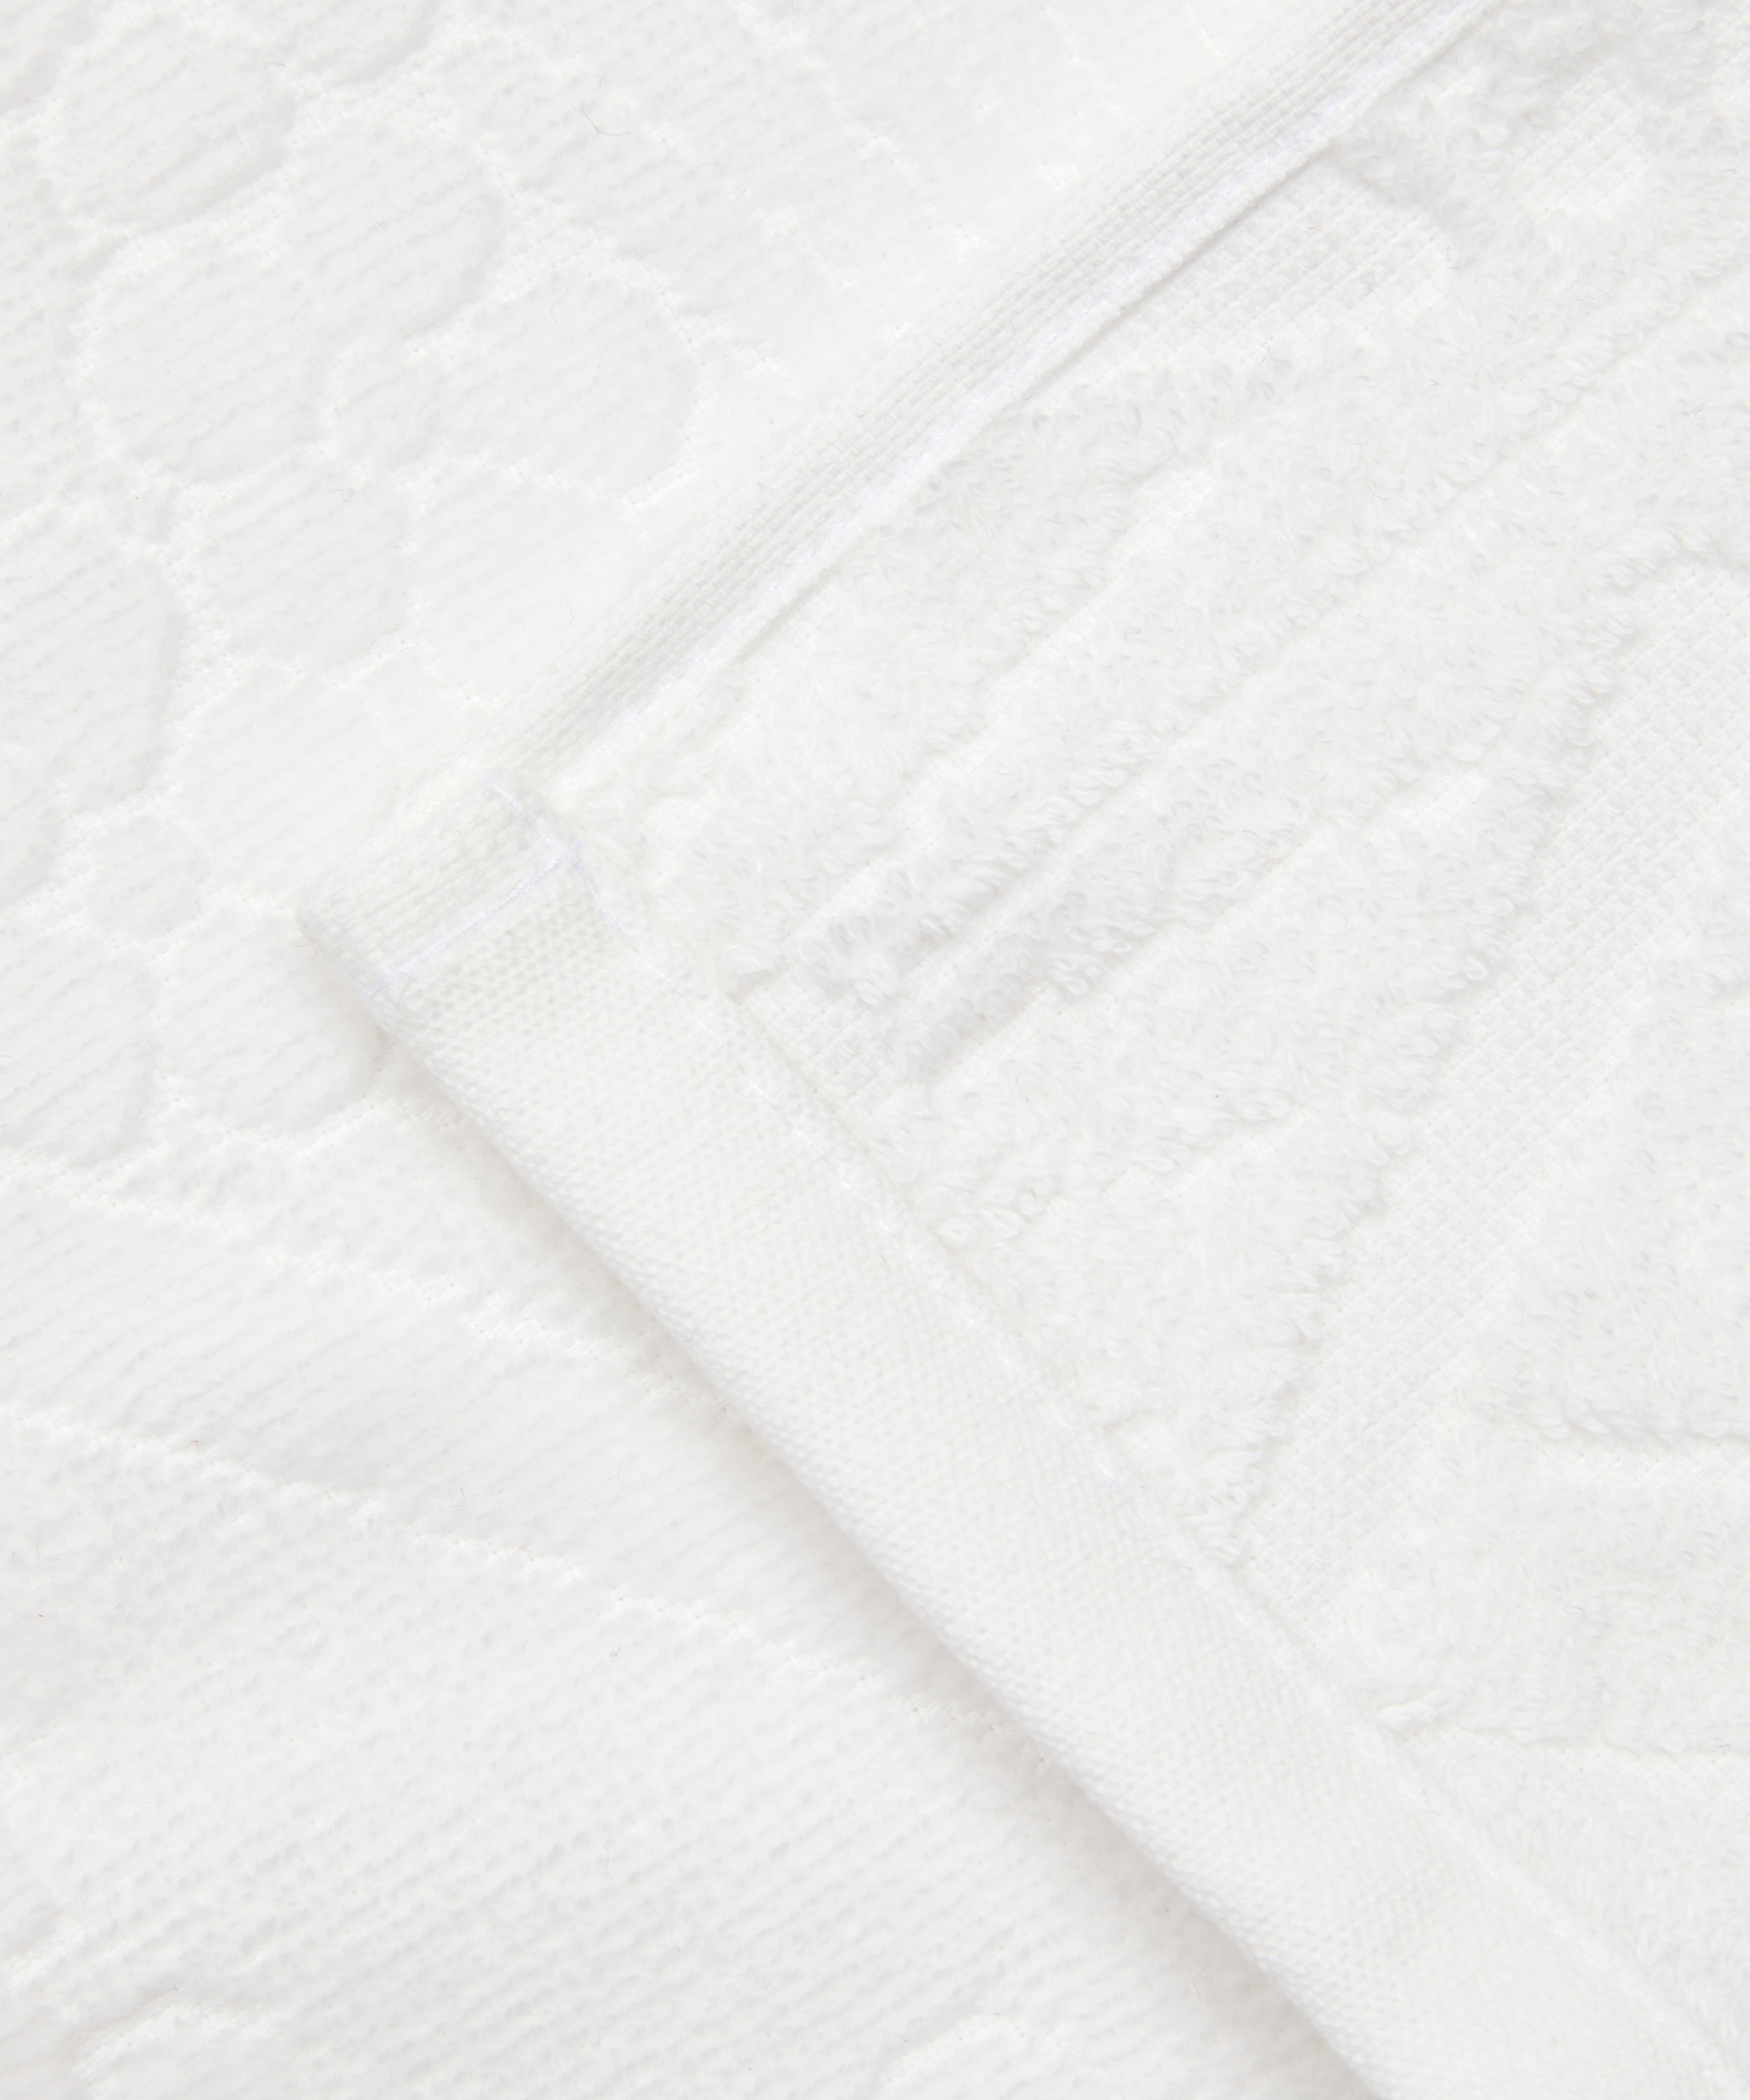 Liberty - Ianthe 4PK Towel Bundle 30x30cm image number 4